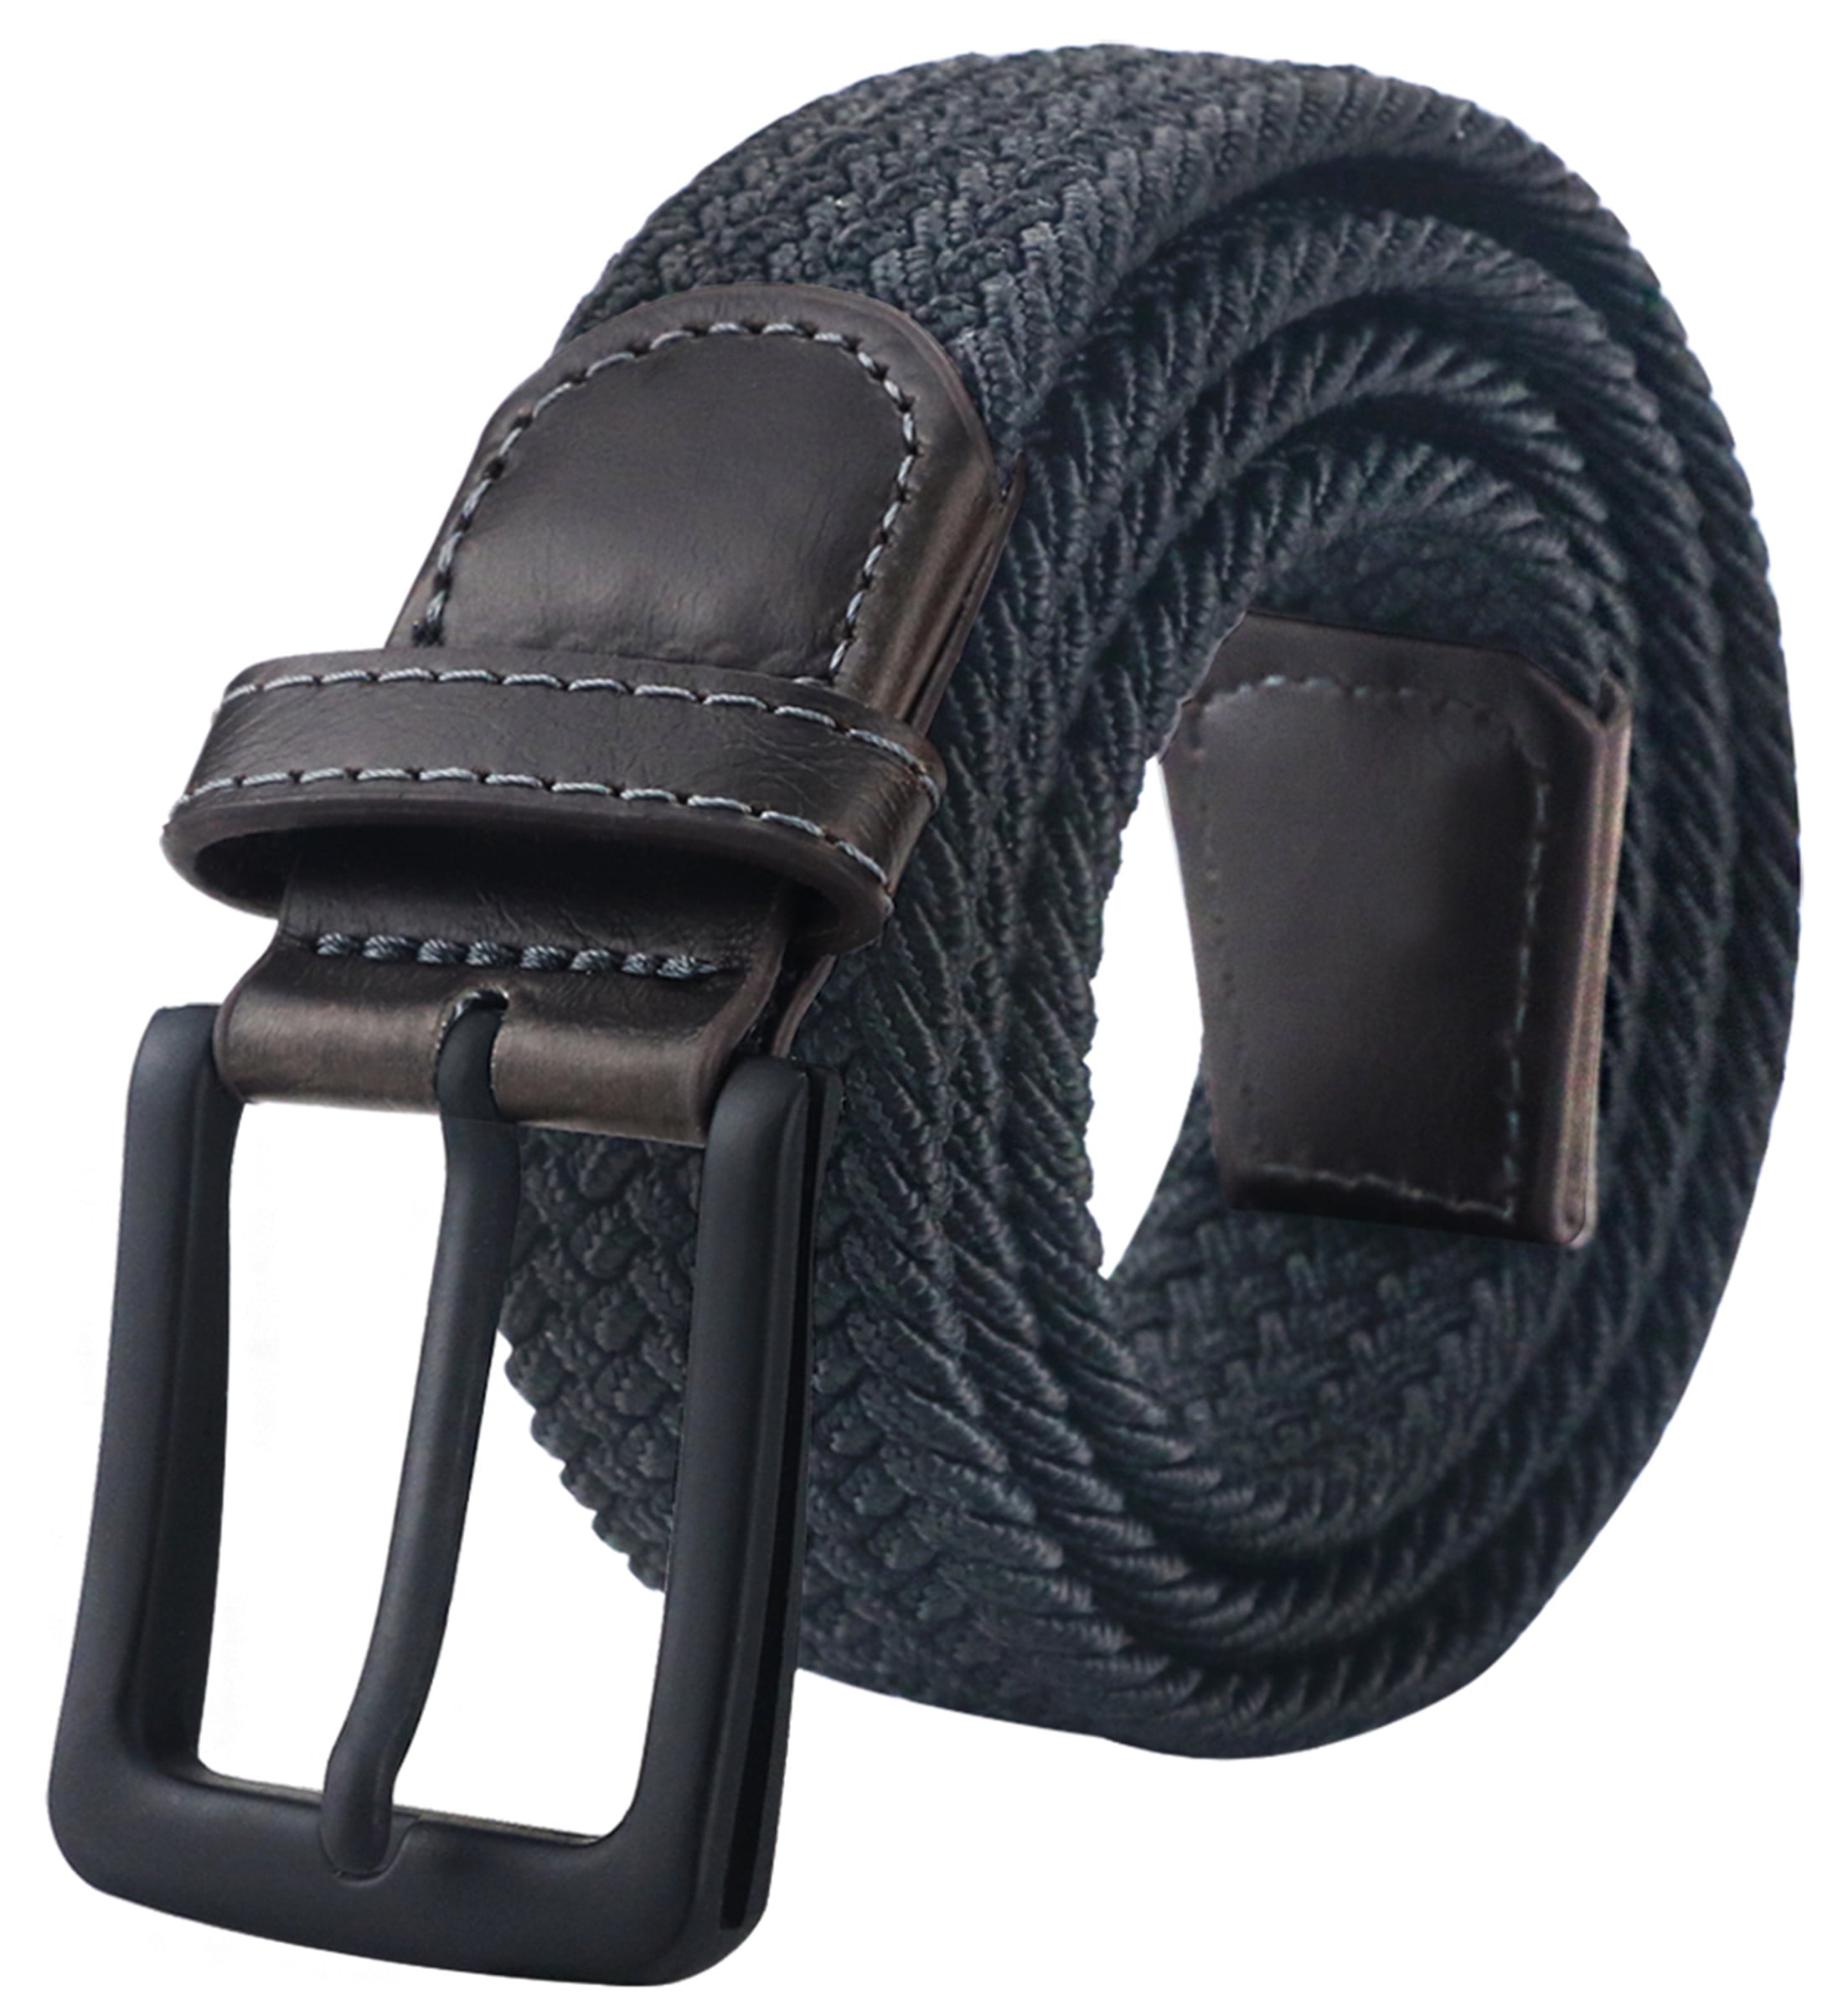 Maikun Men'S Belt Ratchet Leather Dress Belt With Automatic Buckle 35Mm Wide 27 